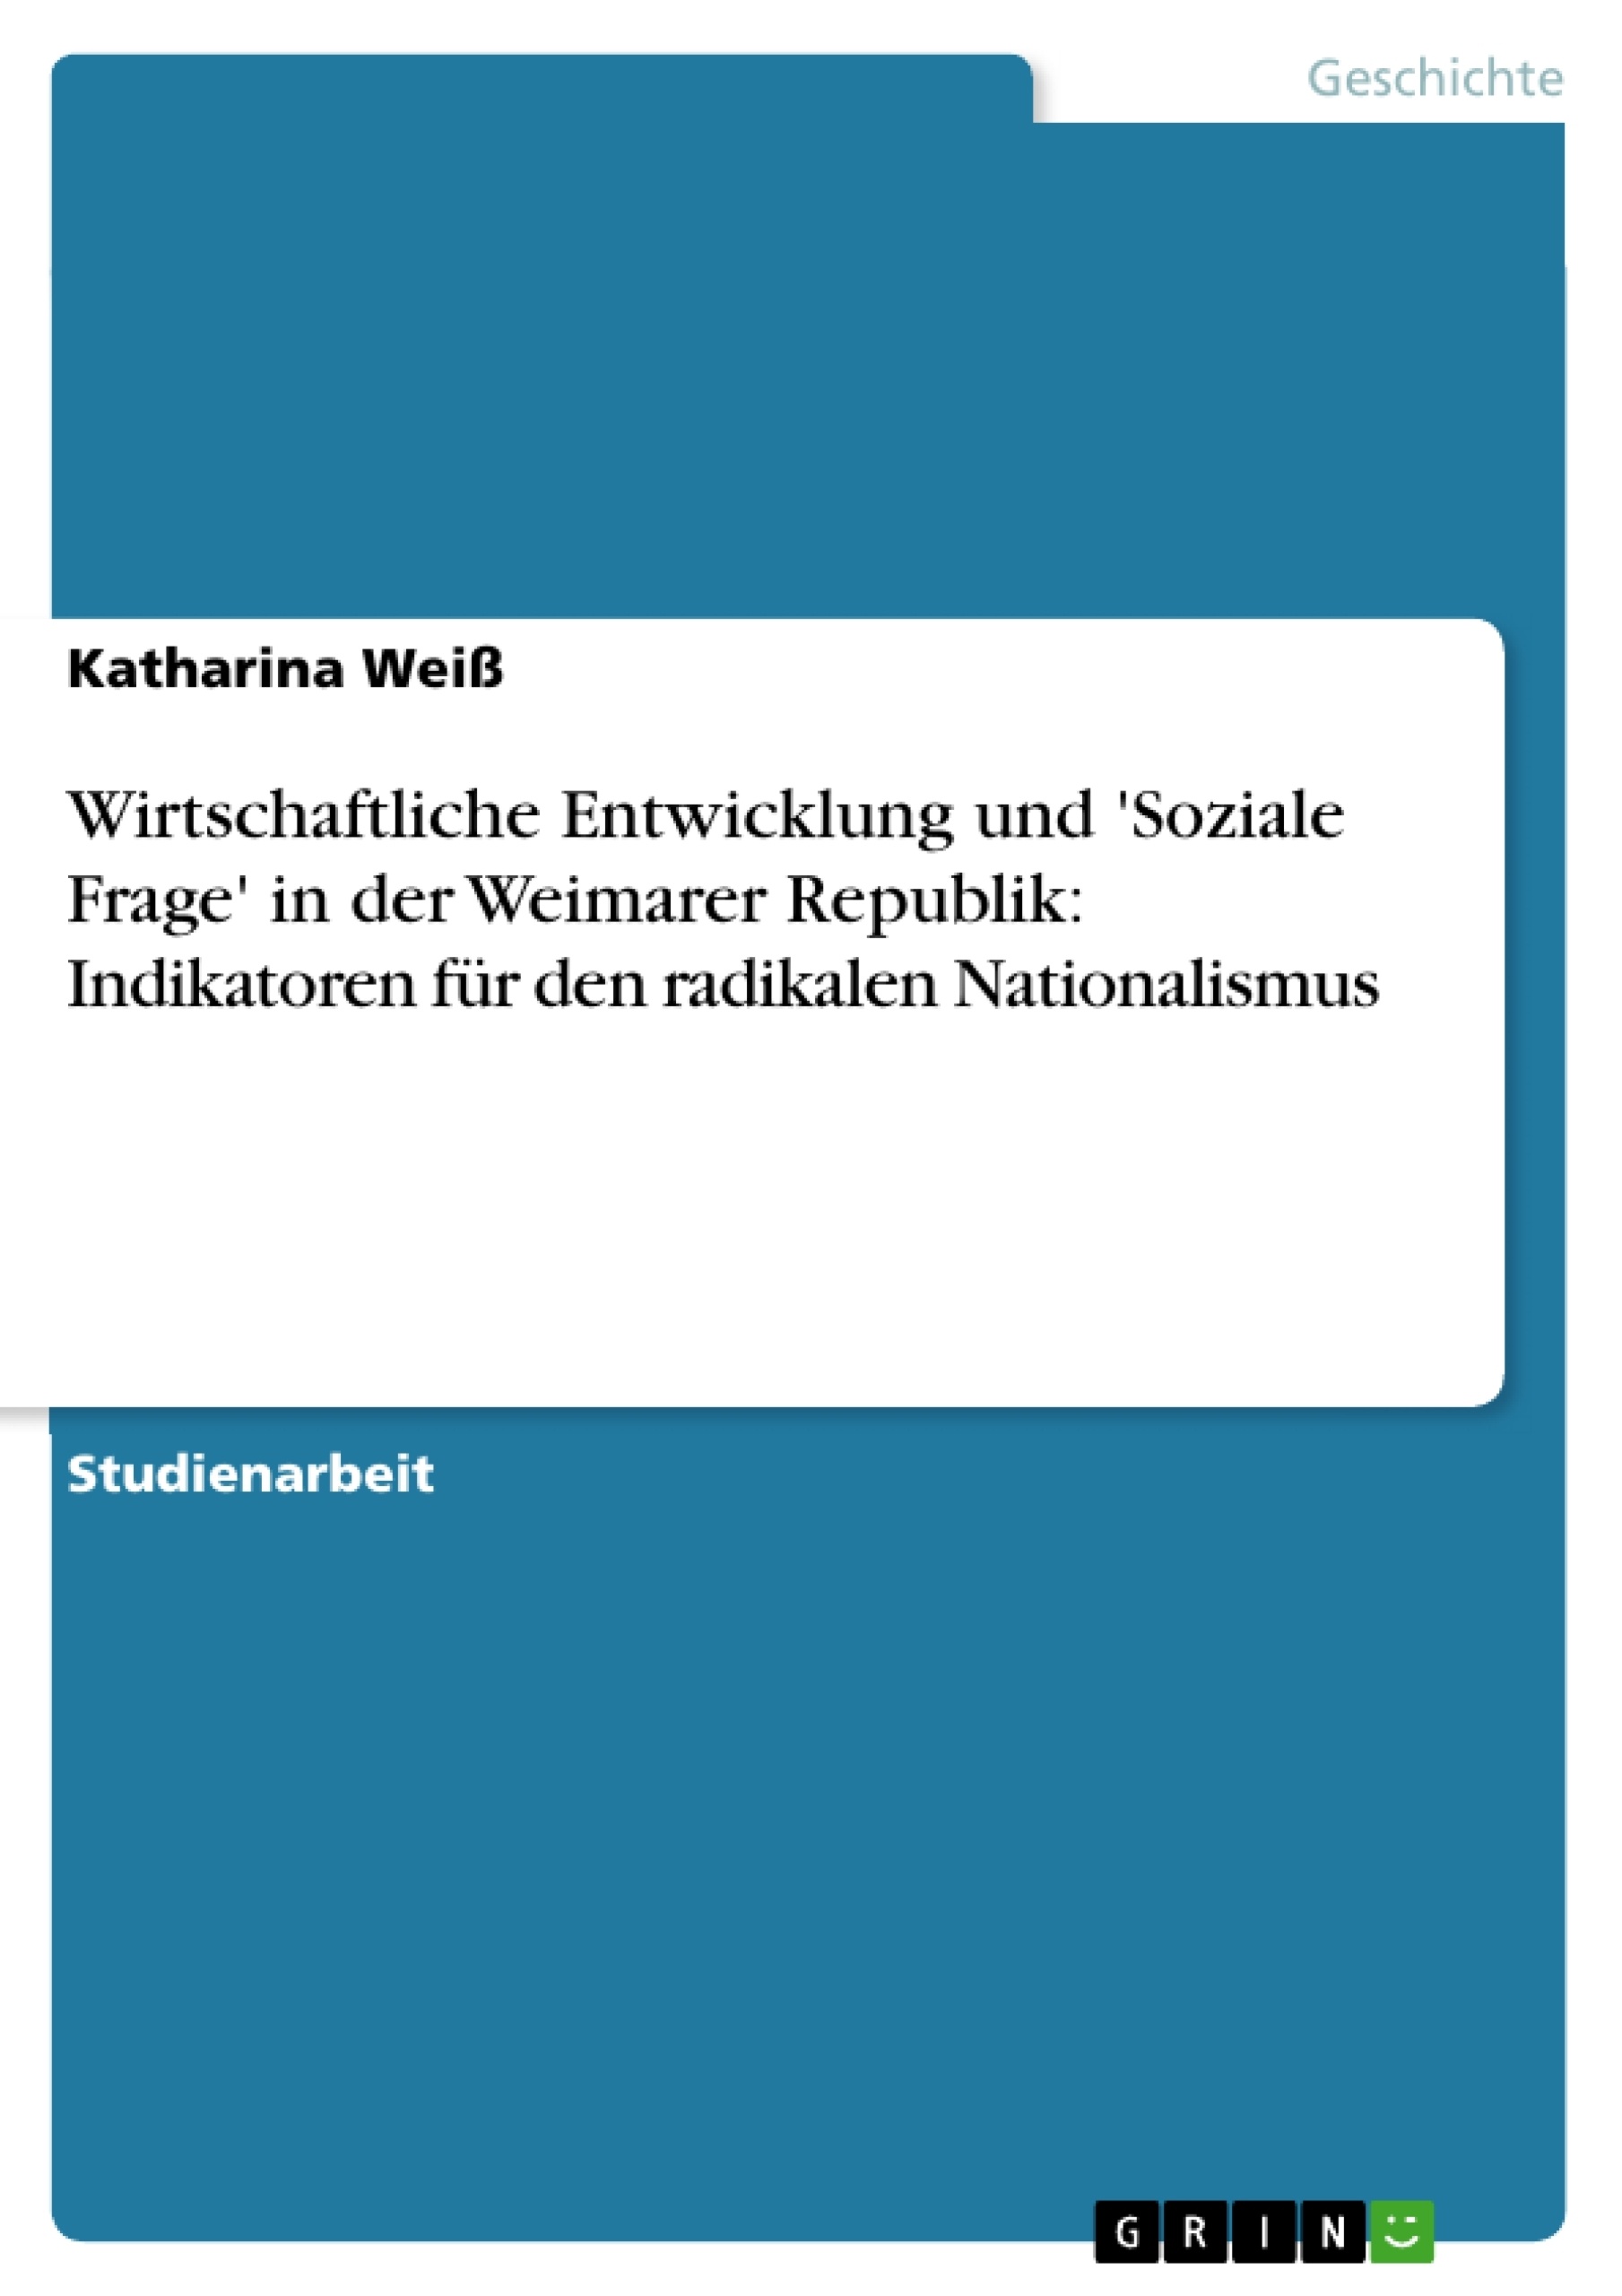 Title: Wirtschaftliche Entwicklung und 'Soziale Frage' in der Weimarer Republik: Indikatoren für den radikalen Nationalismus